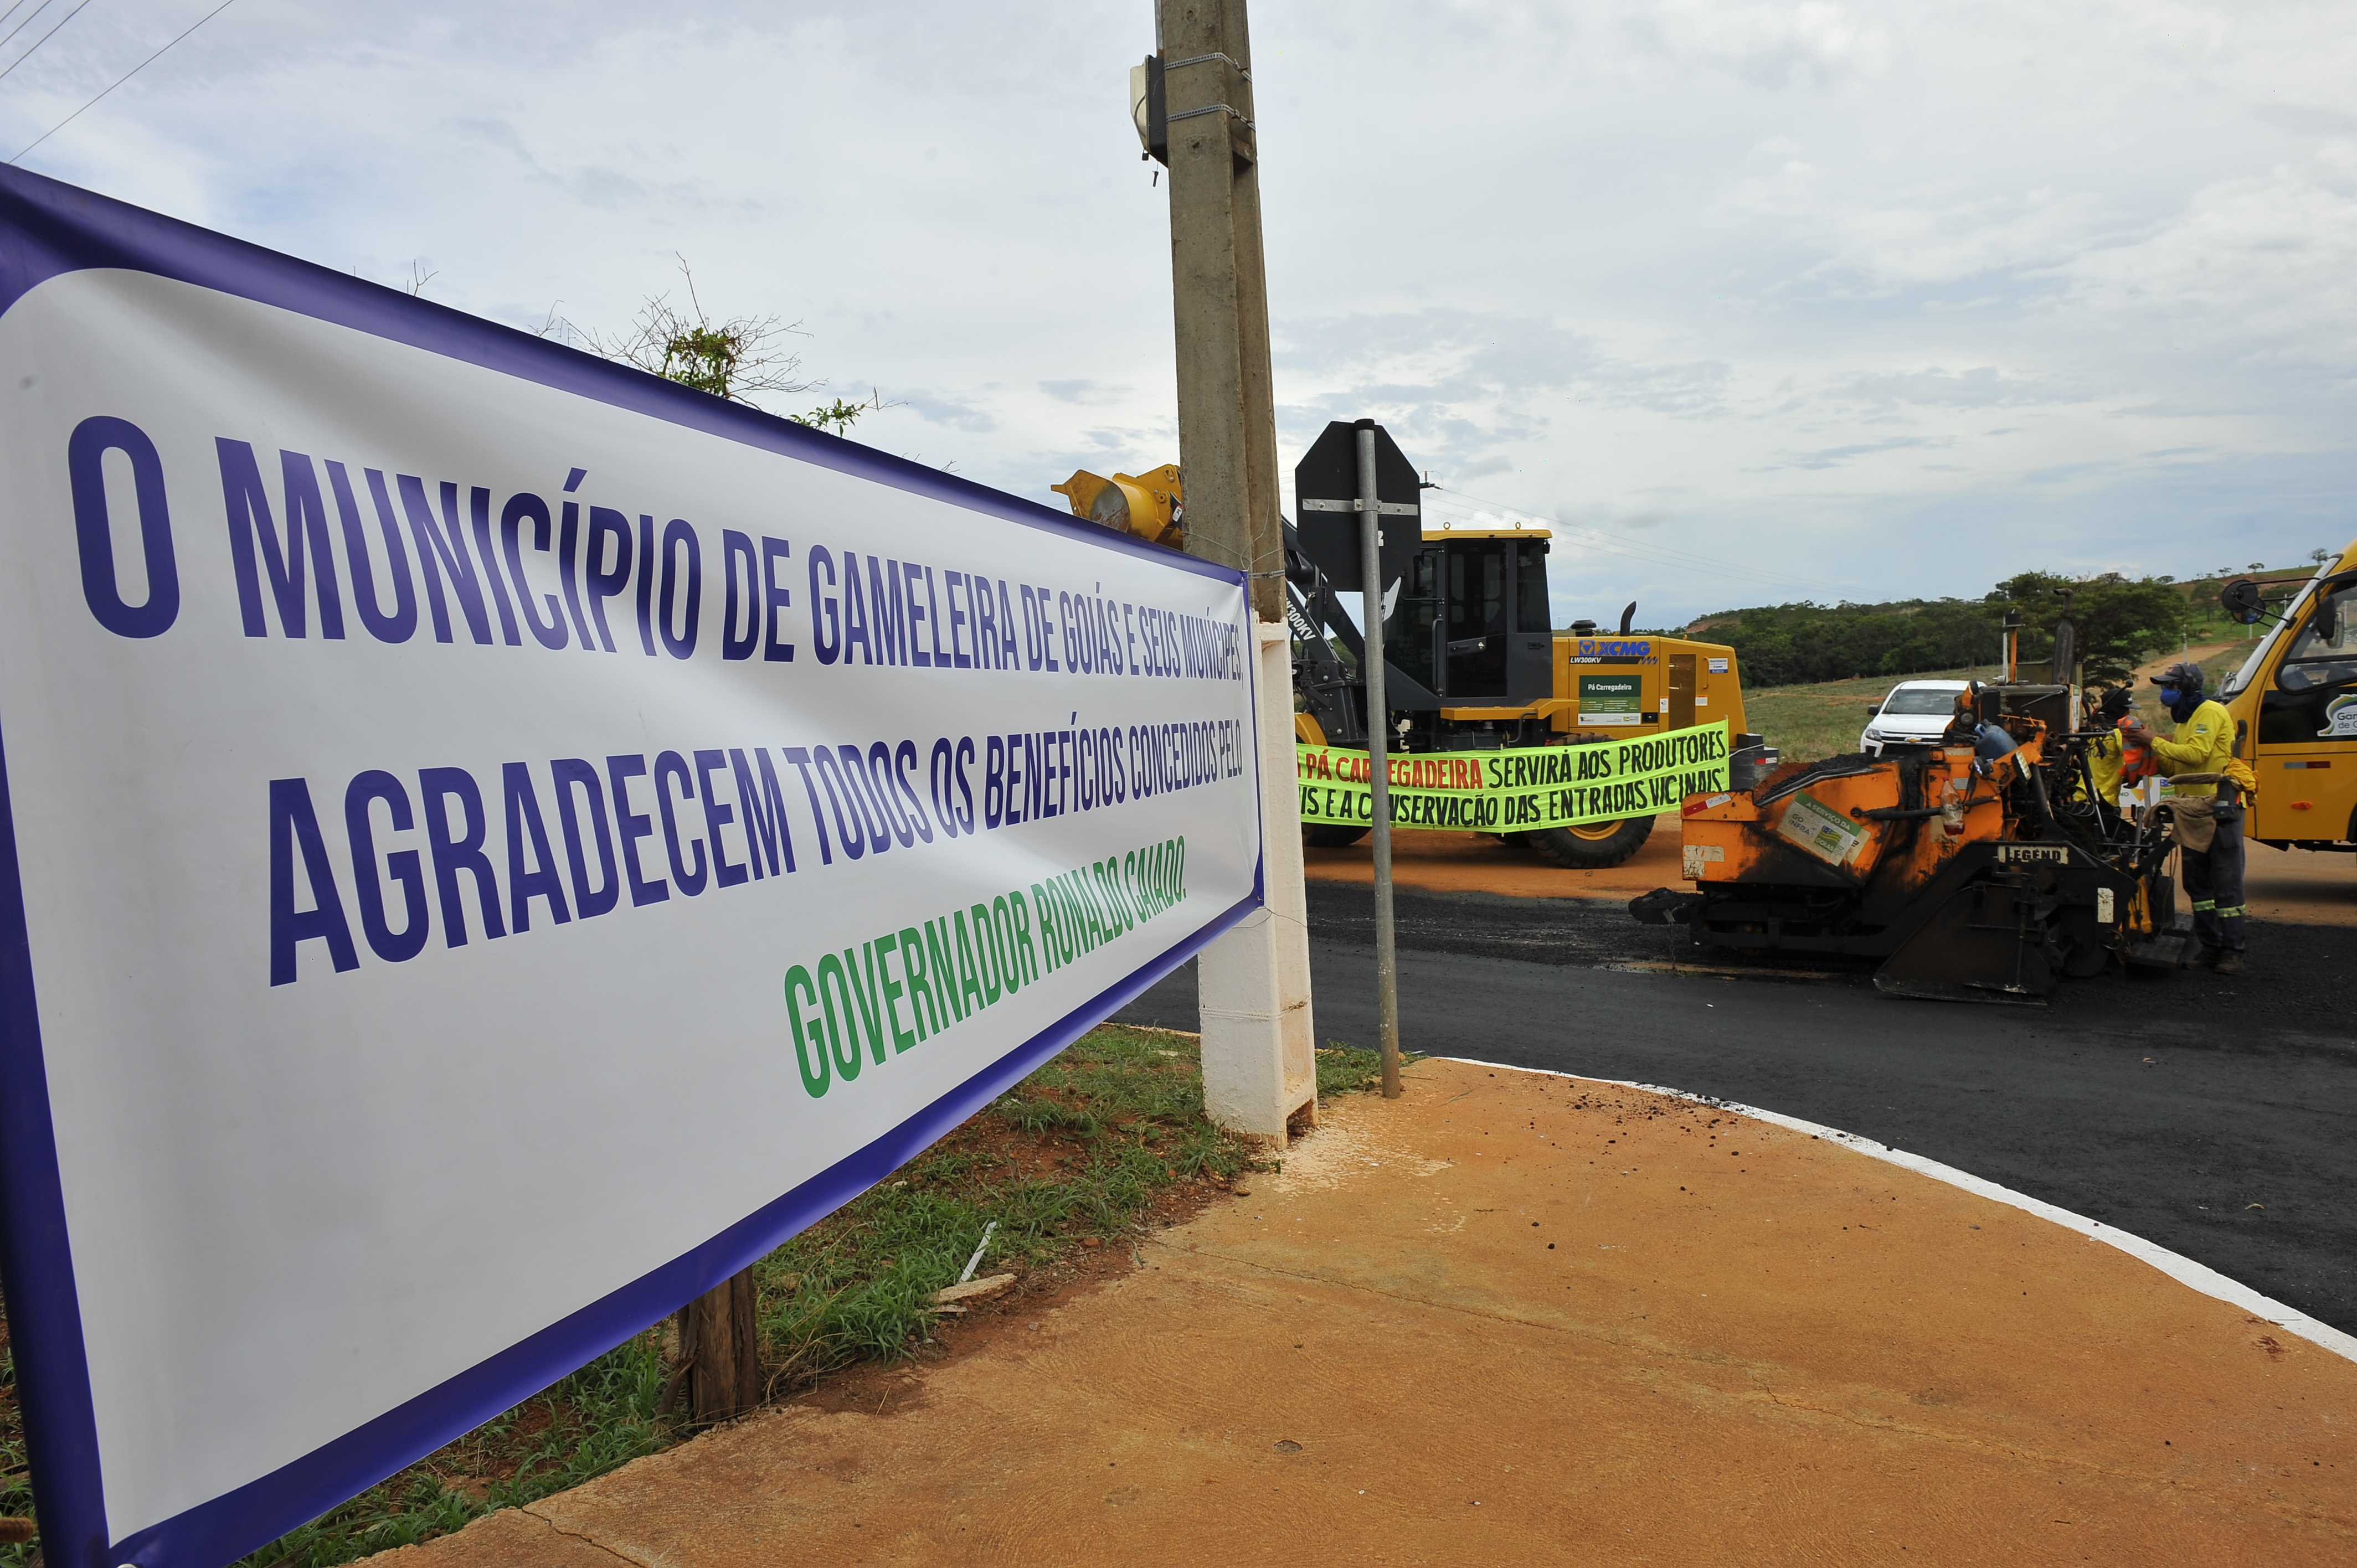 Ferramentas em geral (FEMAG) é inaugurada na cidade de Guarabira - Portal  Independente